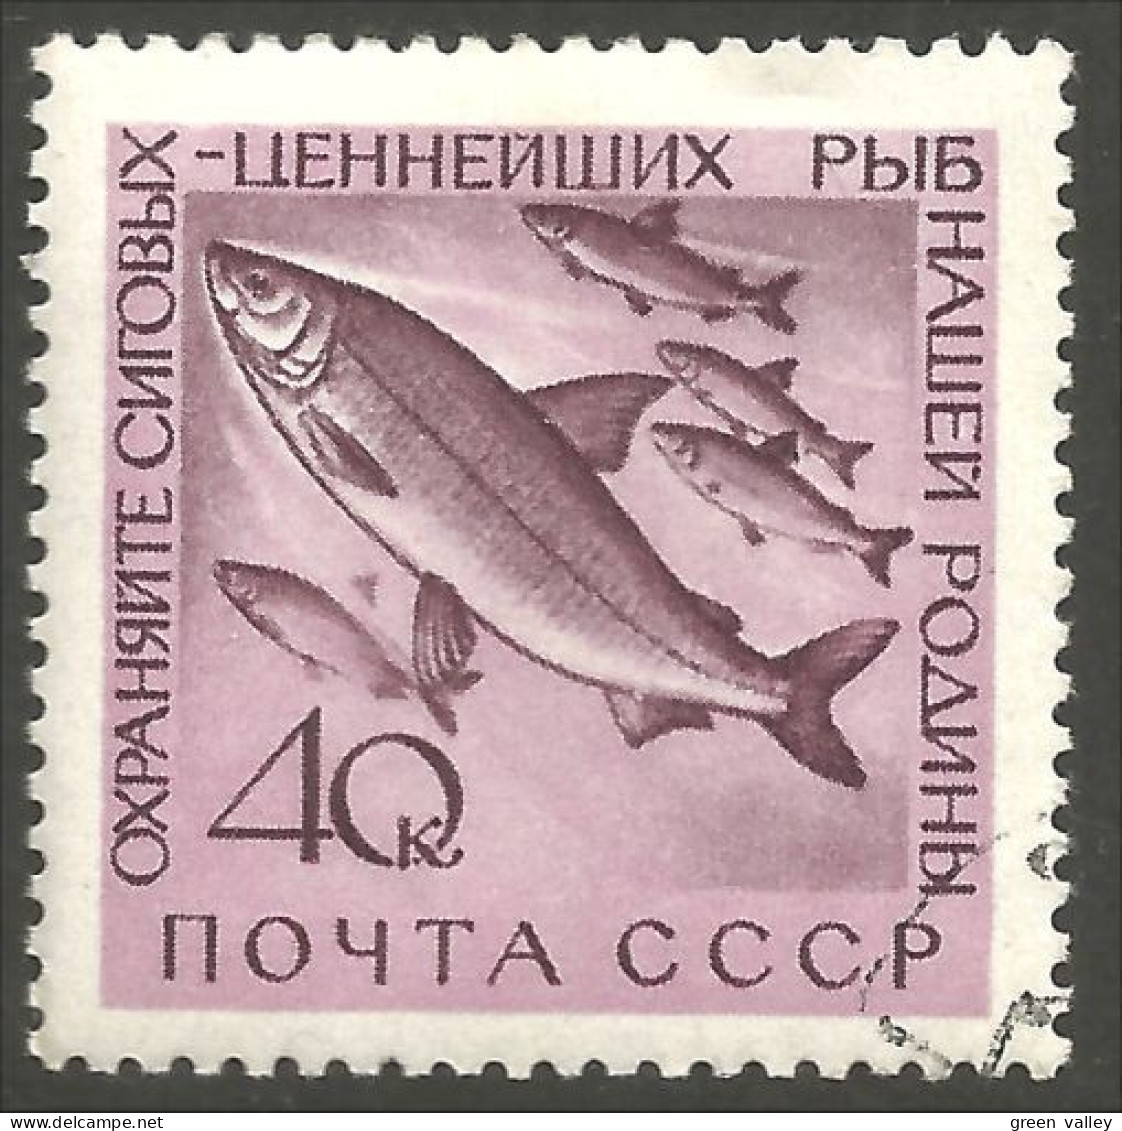 AL-25 Russia Poisson Saumon Salmon Fische Fish Piscis Pesci Vis - Alimentación